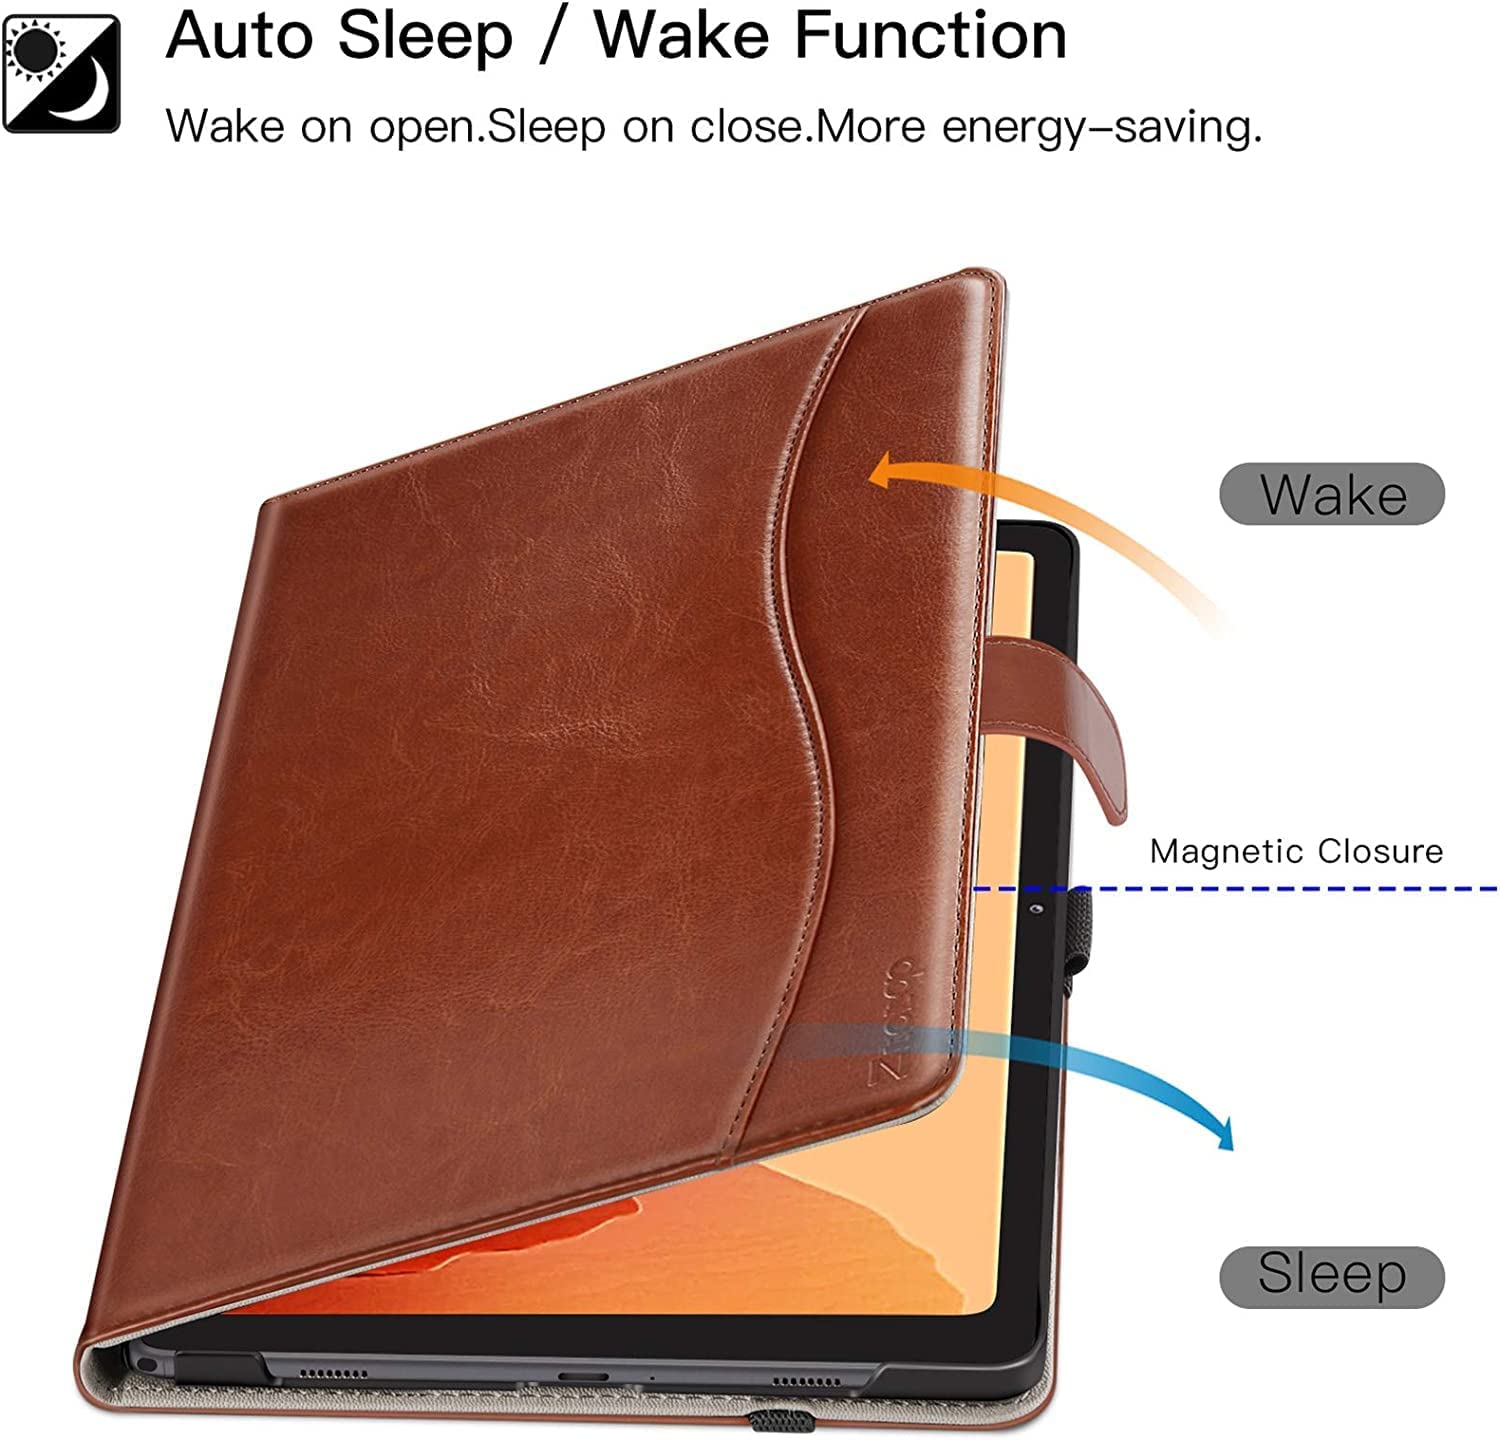 Galaxy Tab A7 Premium Leather Folio Case